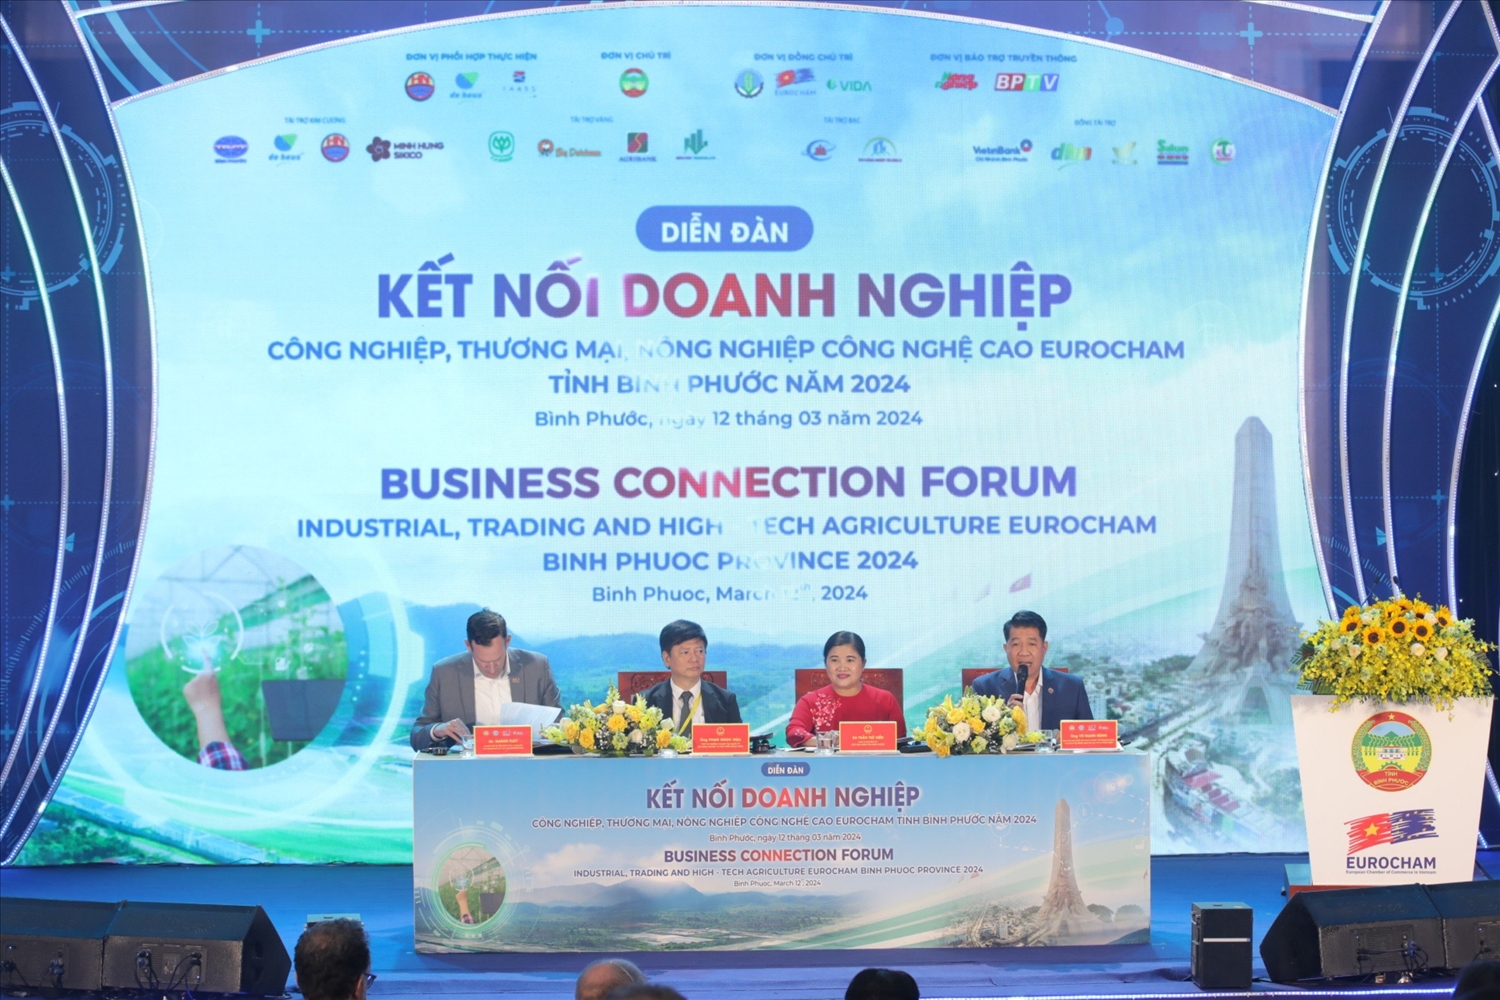 Lãnh đạo UBND tỉnh Bình Phước, Chủ tịch EuroCham và các đơn vị điều hành "Diễn đàn kết nối doanh nghiệp công nghiệp, thương mại, nông nghiệp công nghệ cao EuroCham - Bình Phước năm 2024”